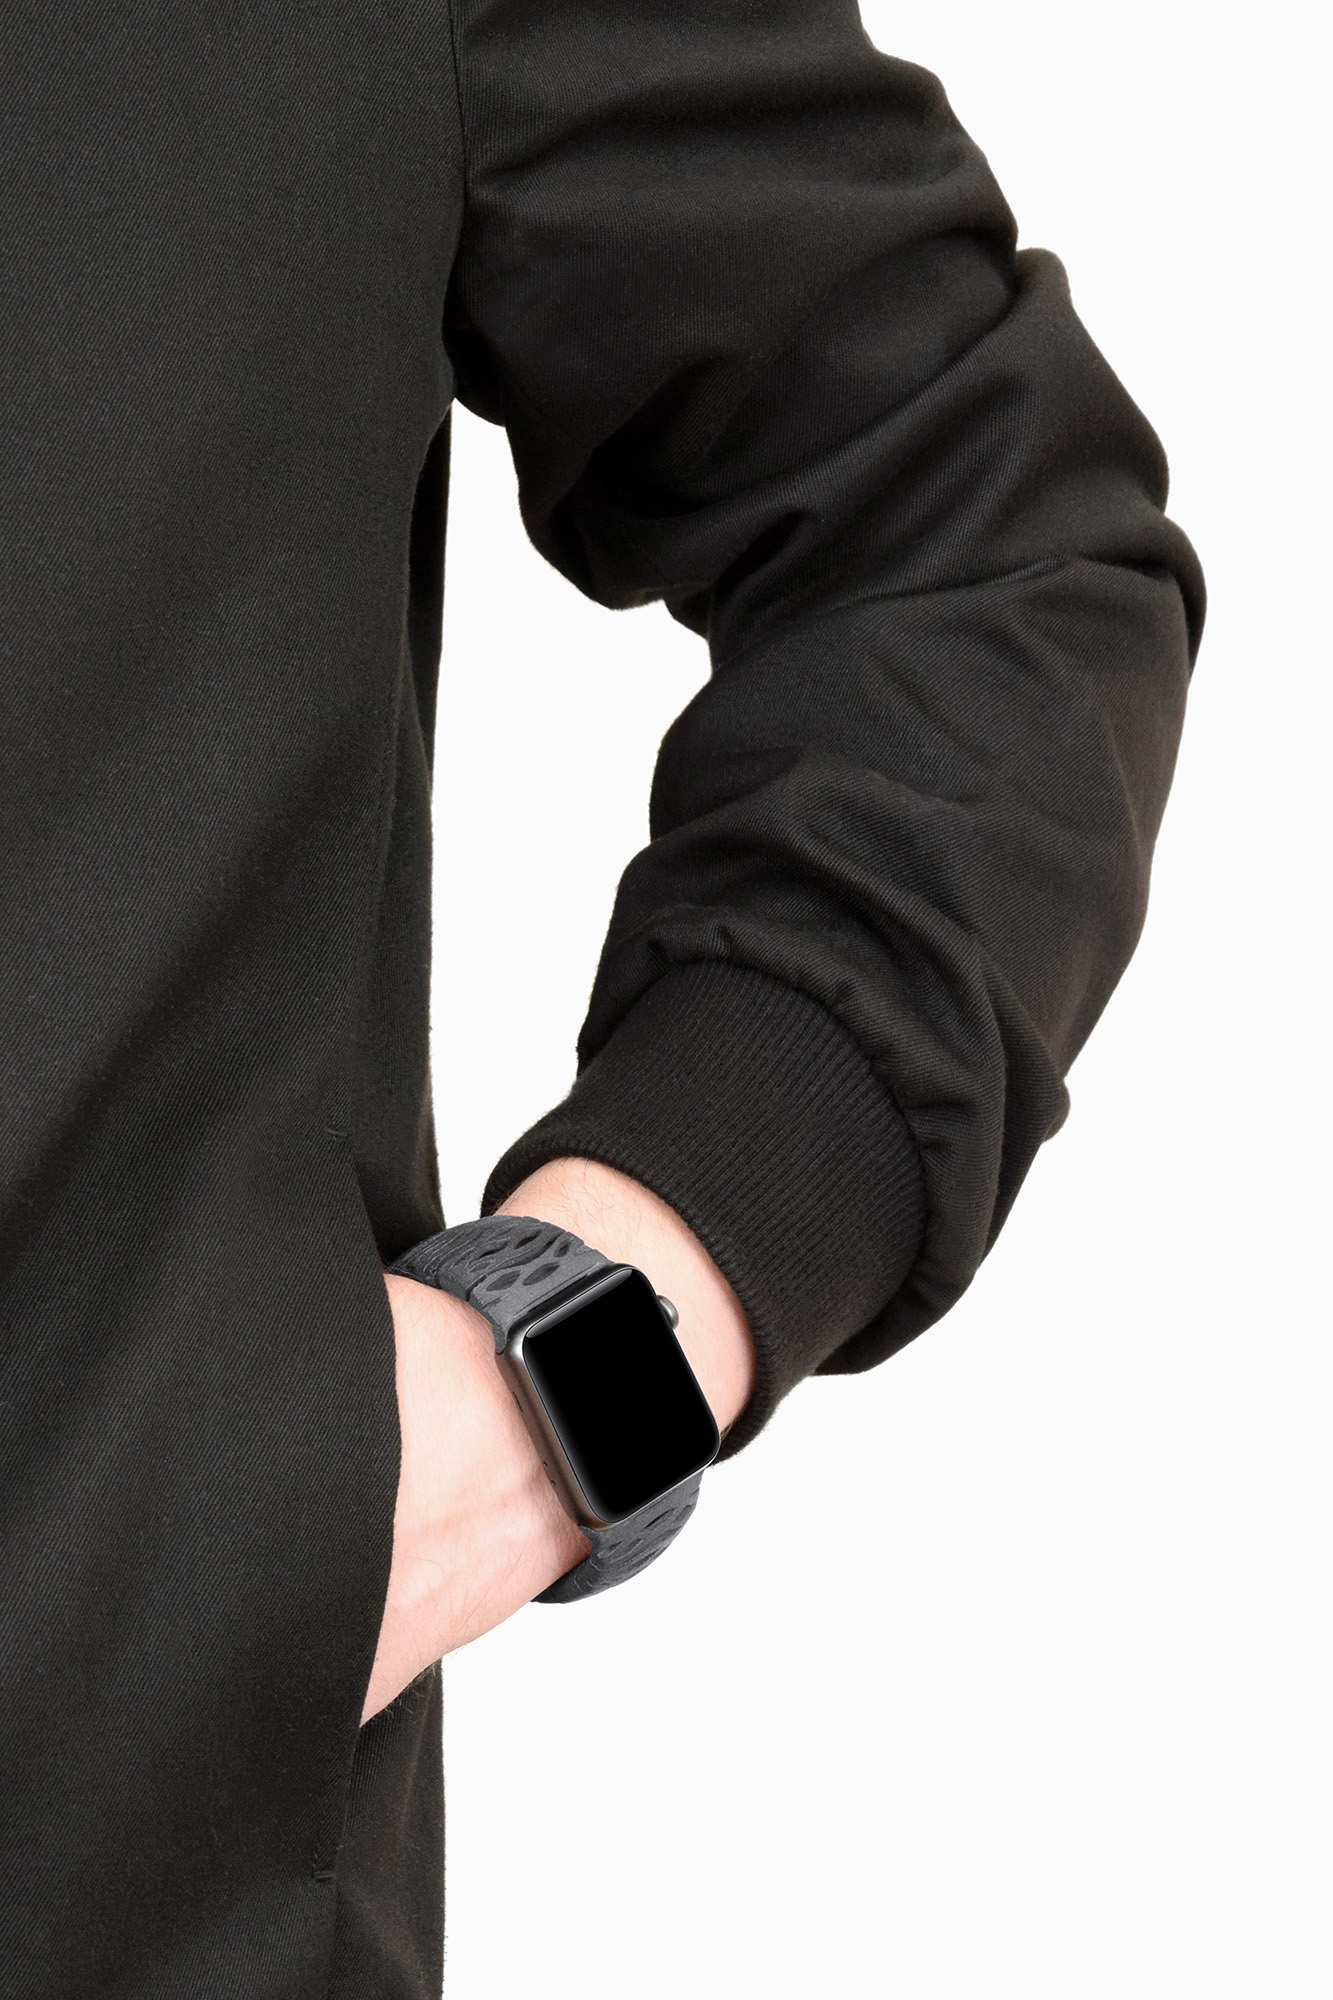 Aurora Apple Watch Band, Design by Matthijs Kok for Freshfiber